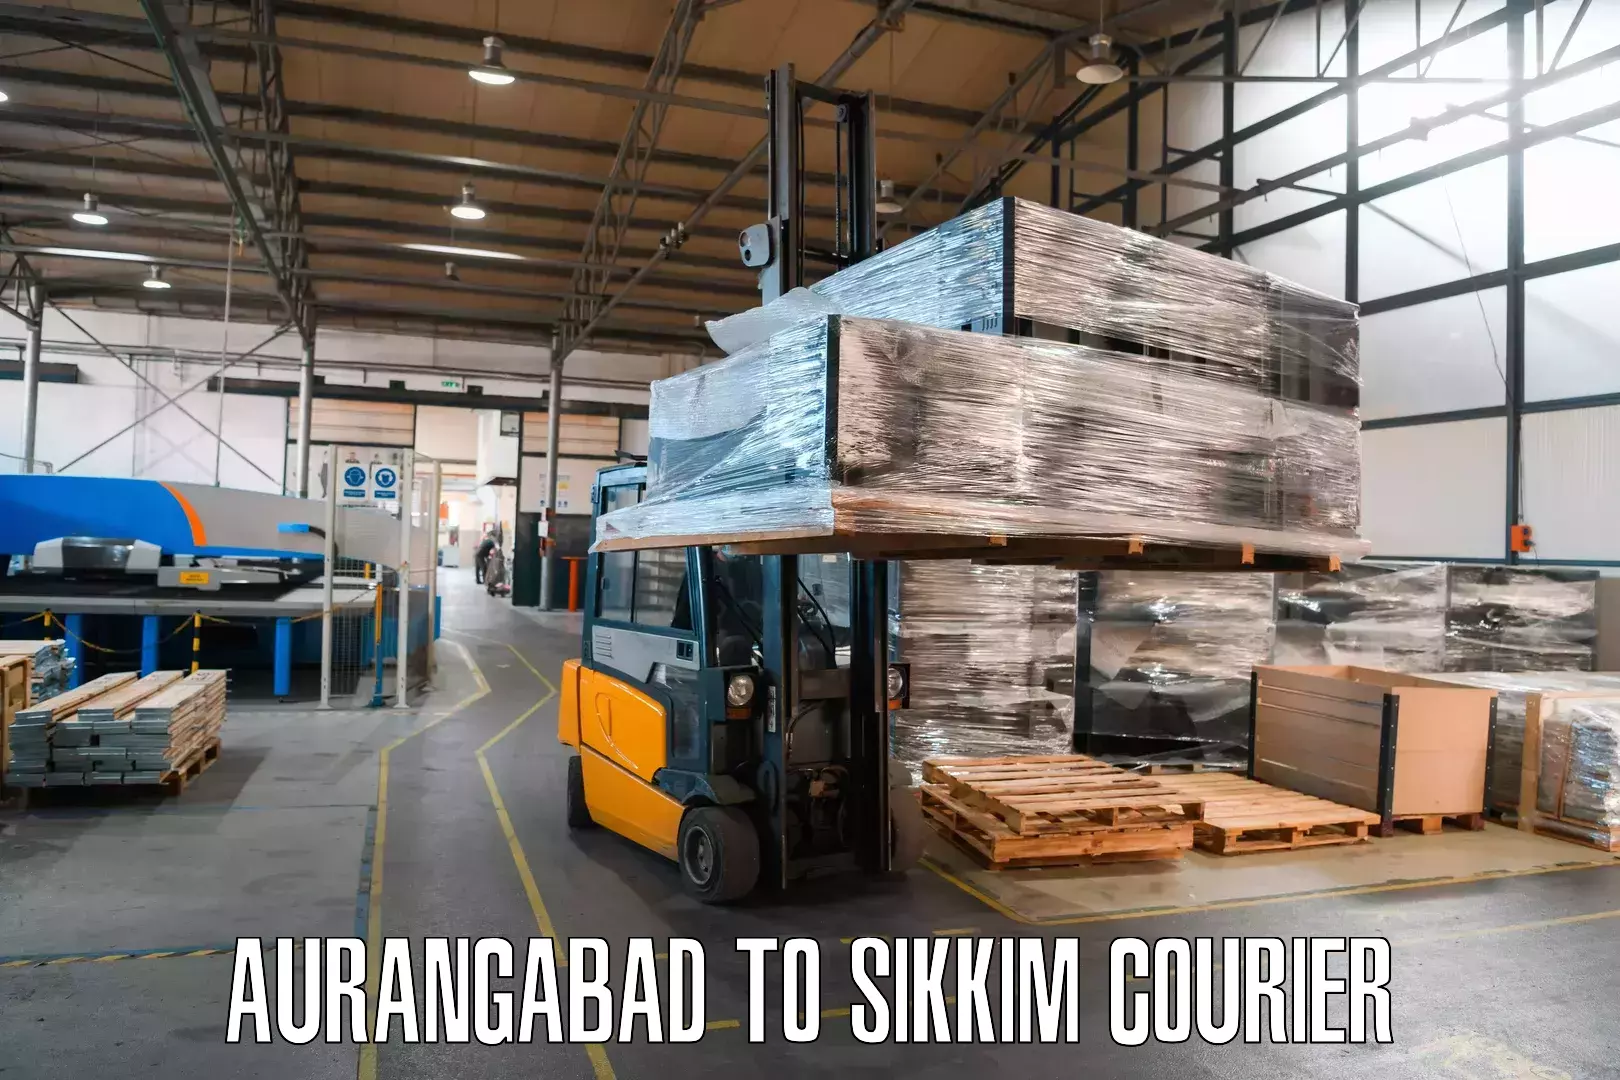 Reliable courier service Aurangabad to Singtam